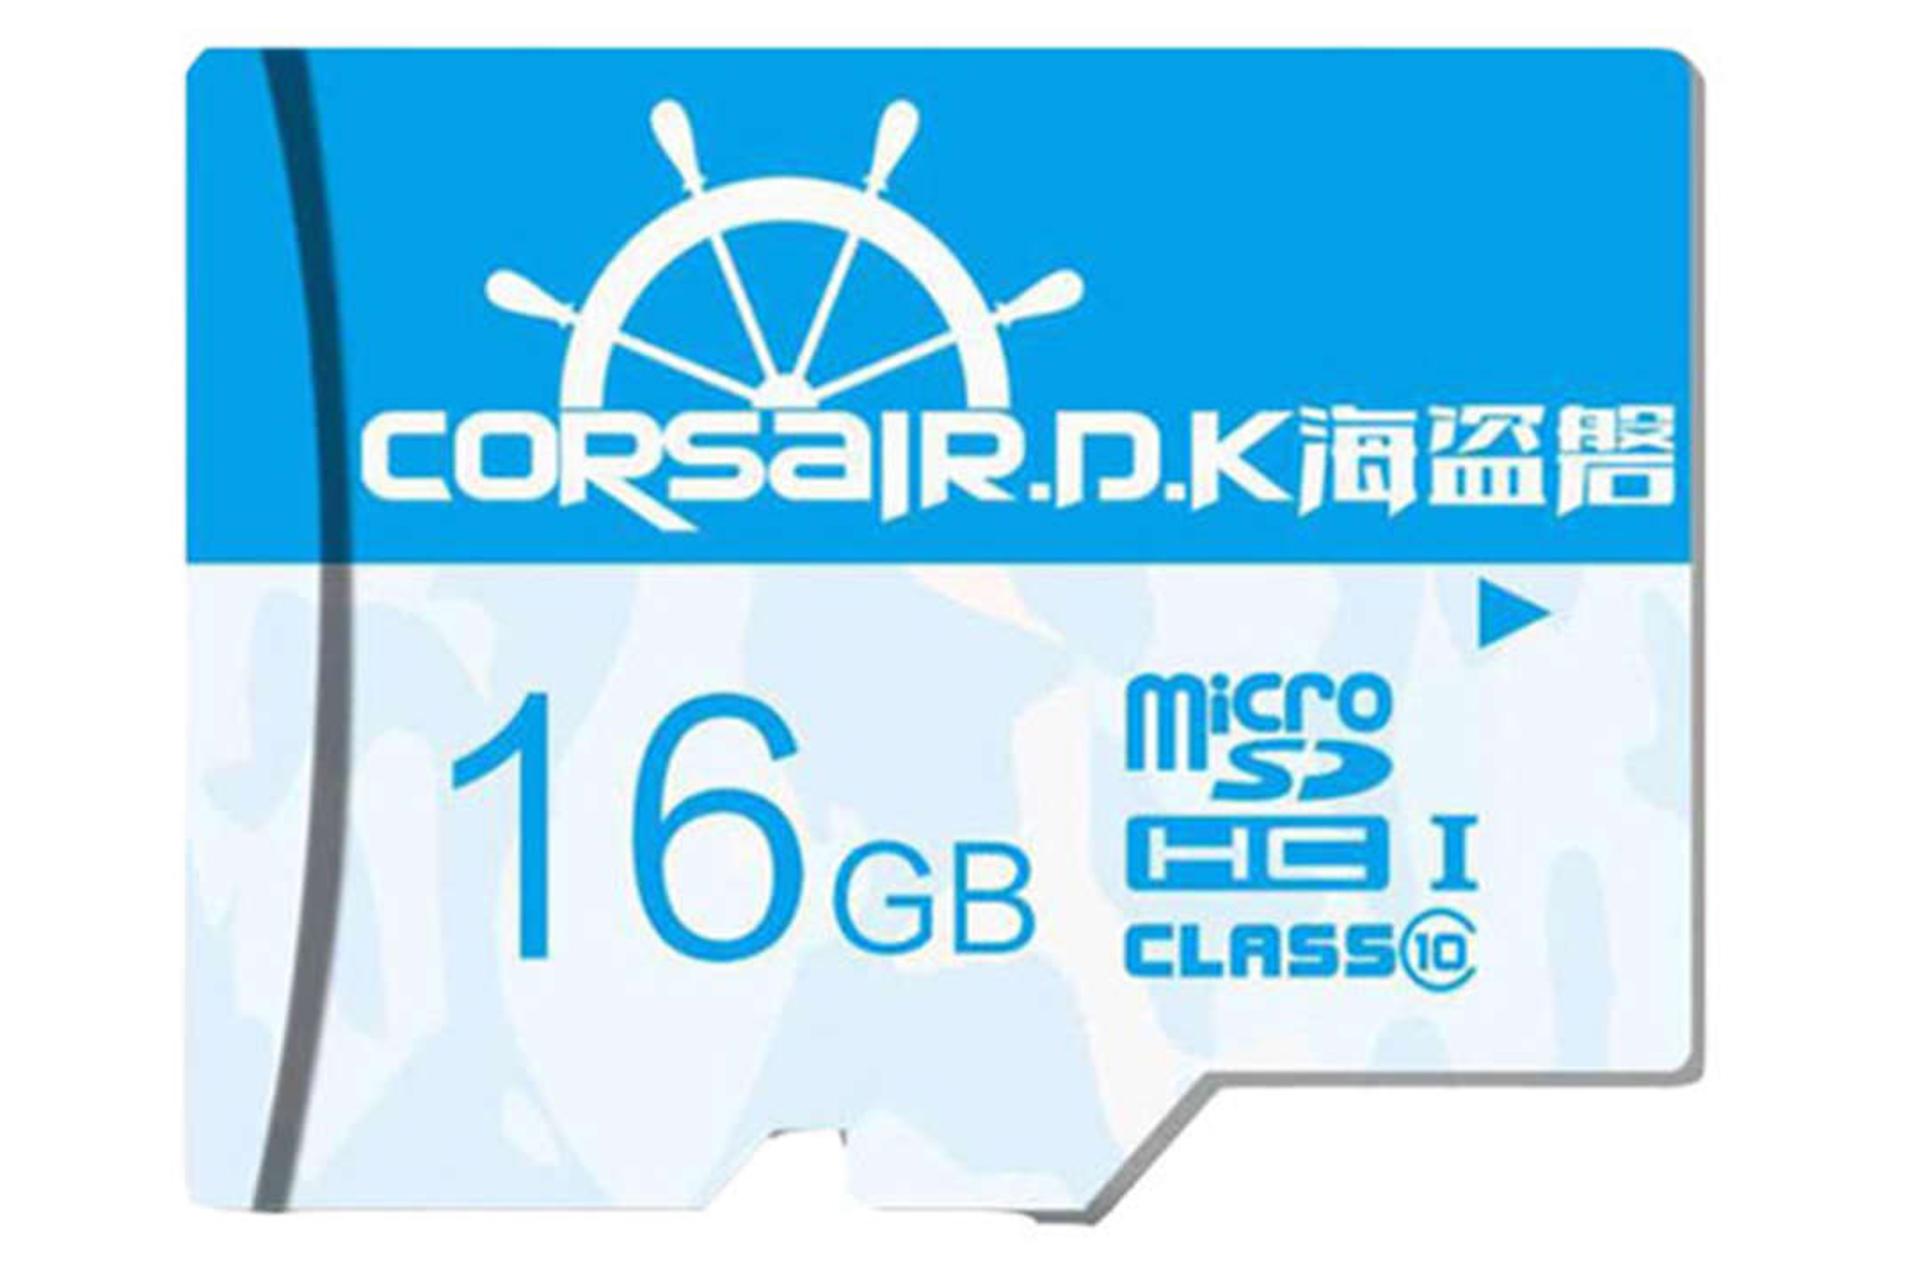 CORSAIR.D.K Ultra-Fast Class 10 UHS-I U1 16GB